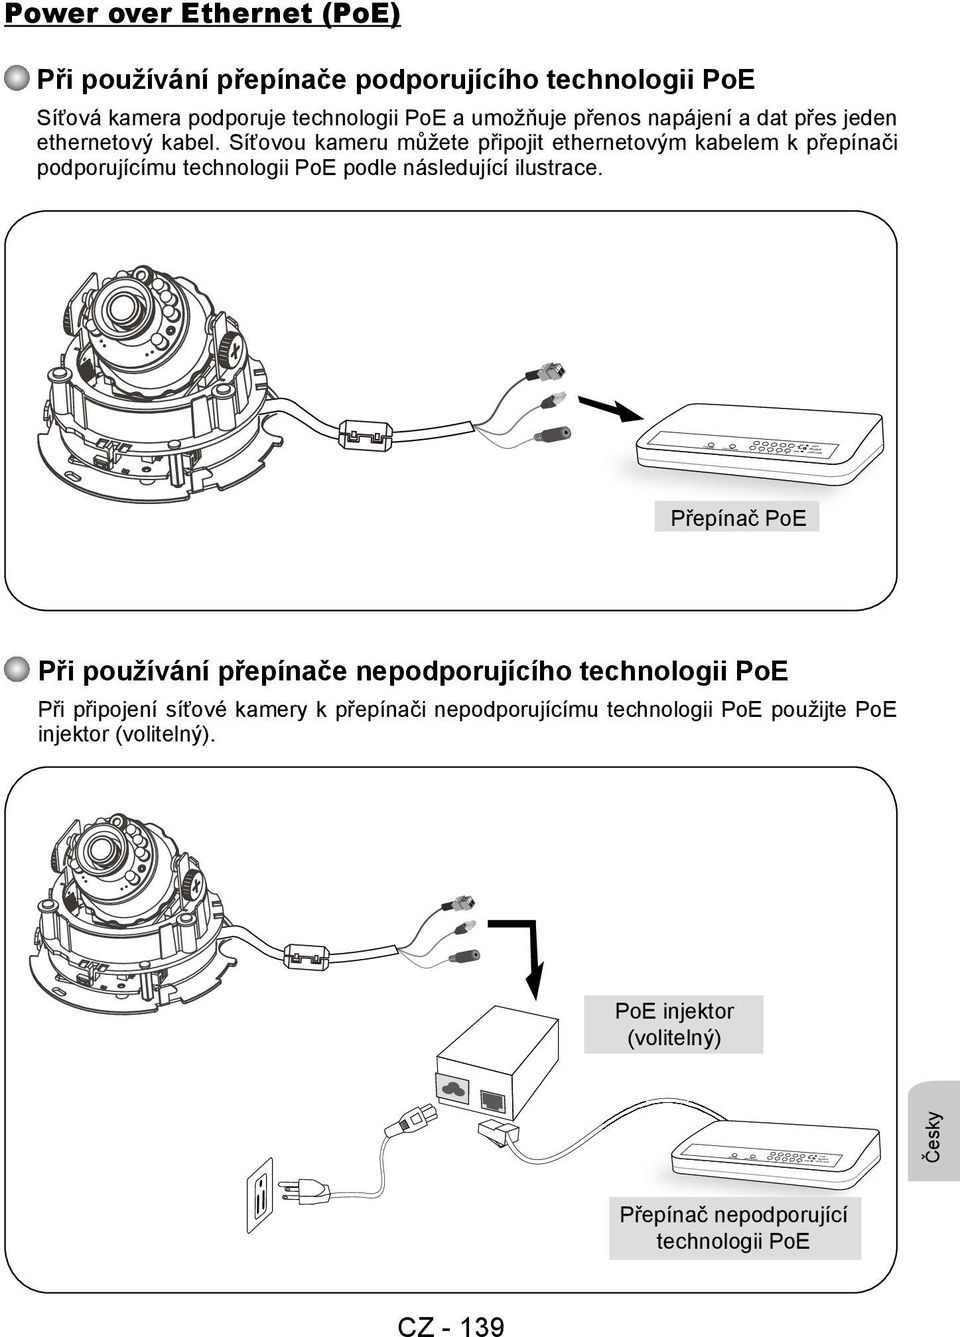 Síťovou kameru můžete připojit ethernetovým kabelem k přepínači podporujícímu technologii PoE podle následující ilustrace.